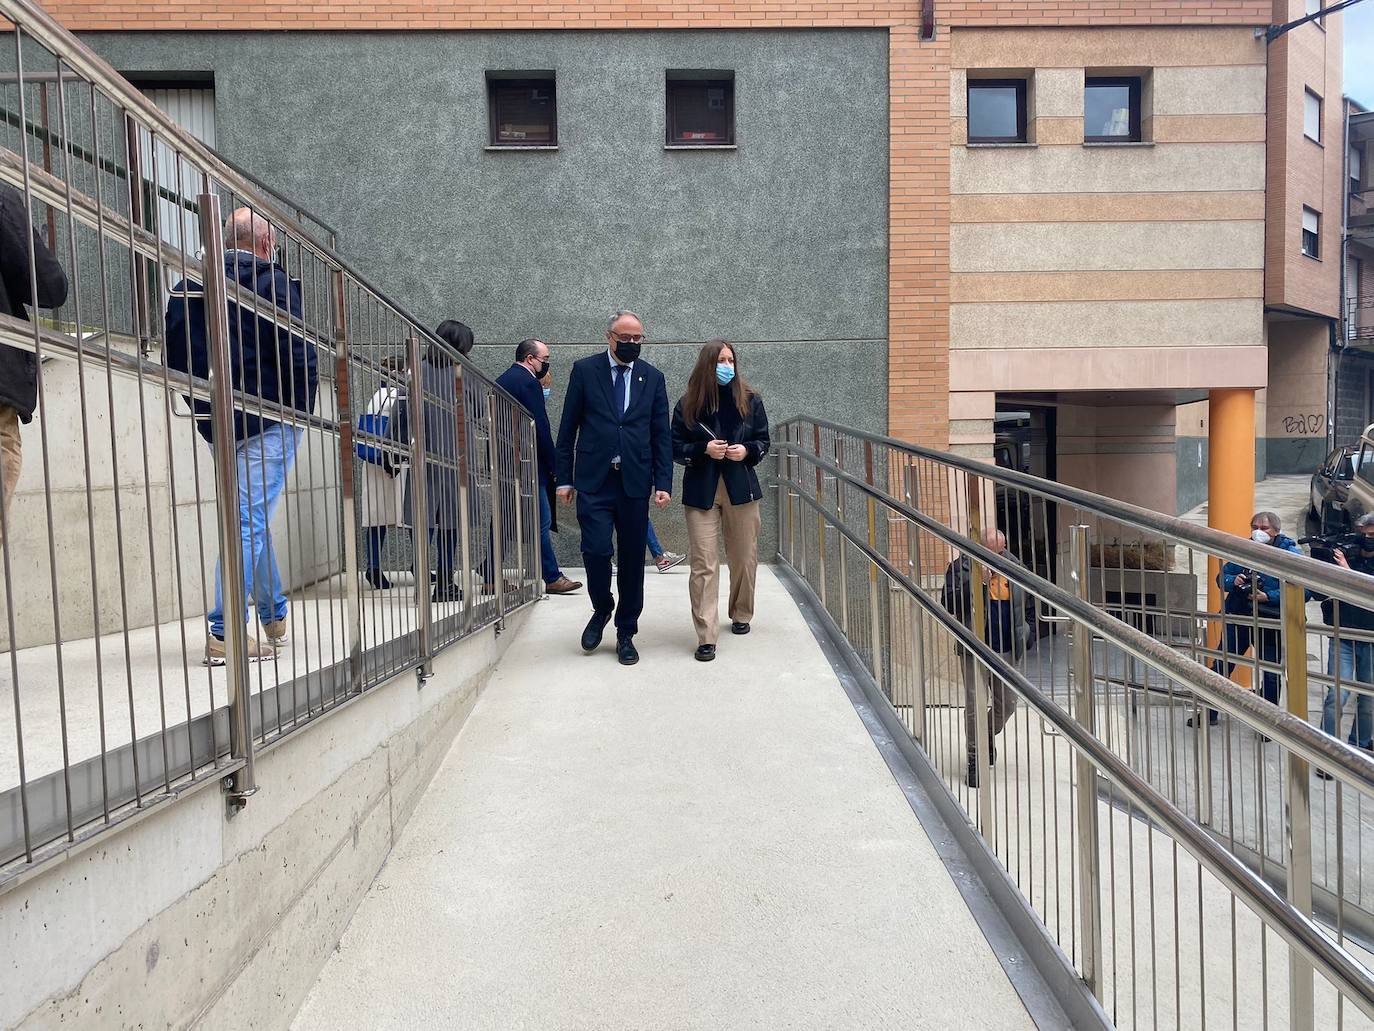 El alcalde de Ponferrada y la delegada de la Junta, en la nueva rampa que mejora la accesibilidad en el barrio de los Judíos.